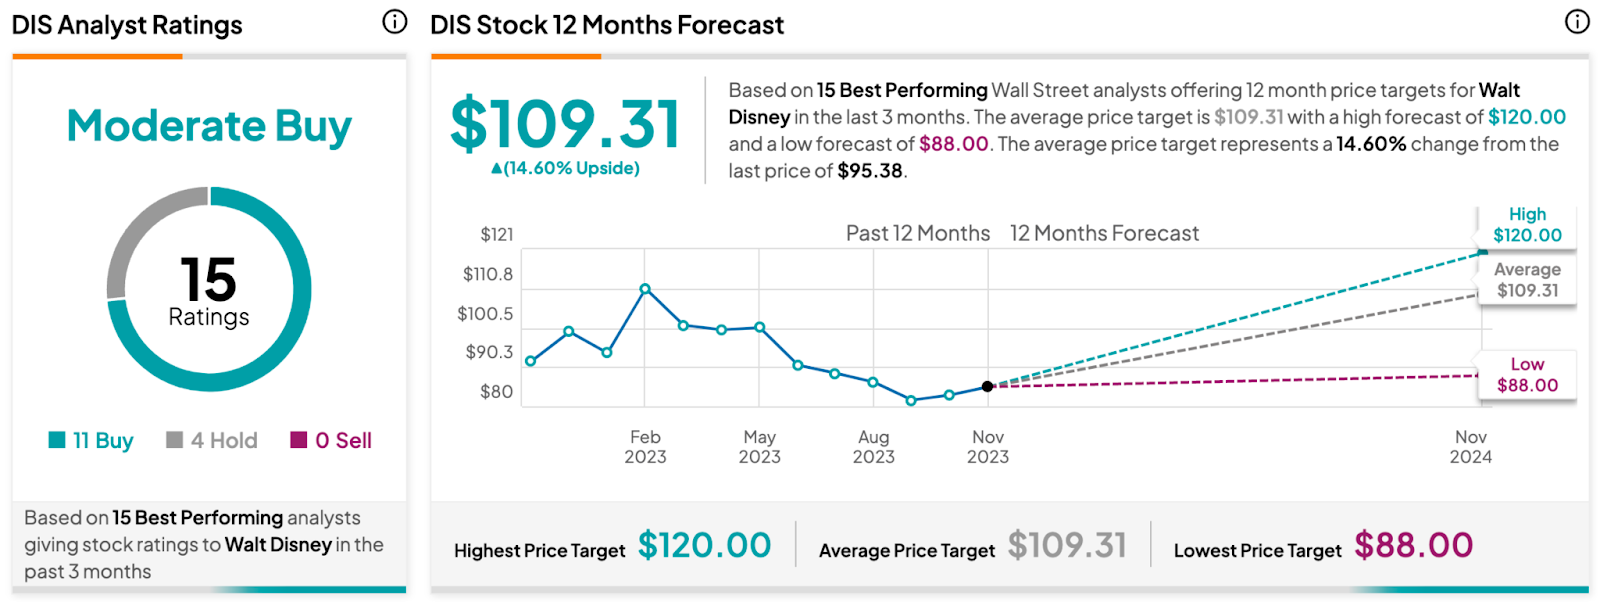 Акции Disney (NYSE:DIS) поднялись после получения похвалы аналитиков